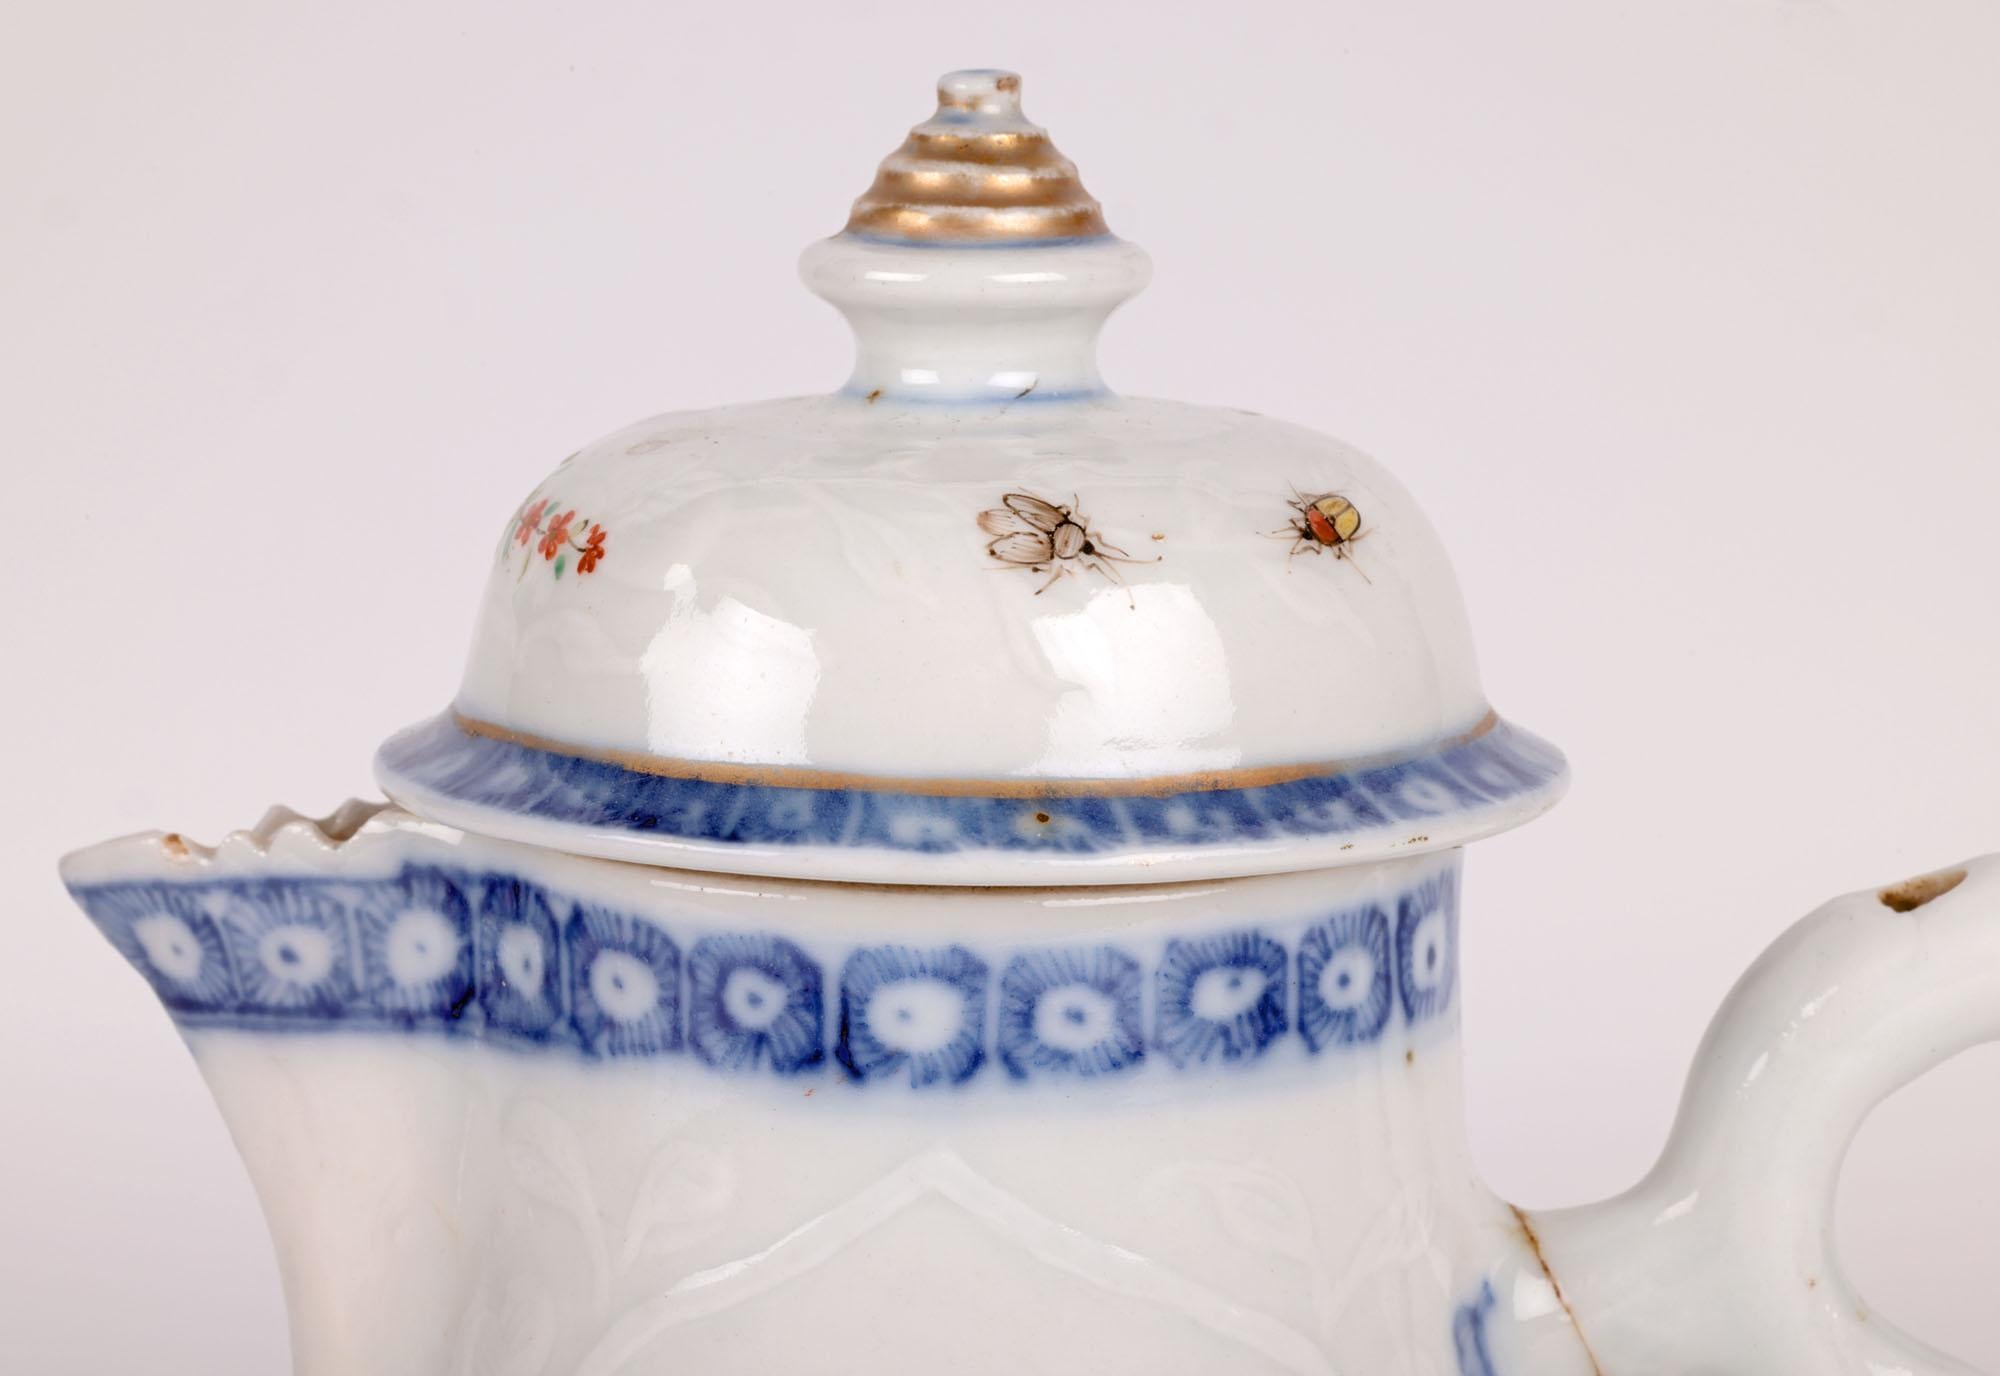 Rare cruche à couvercle et à anse en porcelaine chinoise de la période Kangxi (1662-1722), embossée de fleurs et peinte à la main dans le style européen. La cruche repose sur un pied étroit et rond, avec un corps rond et bulbeux et un sommet en